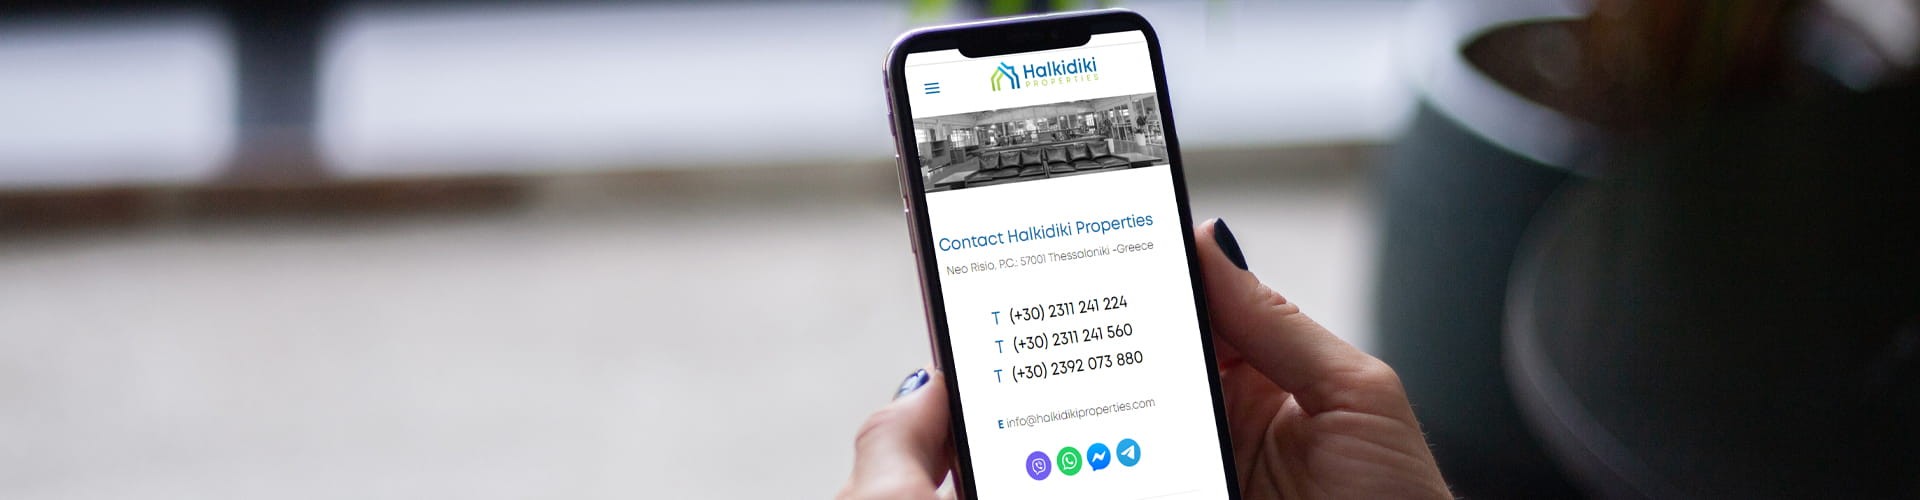 Kontakt mit Halkidiki Properties